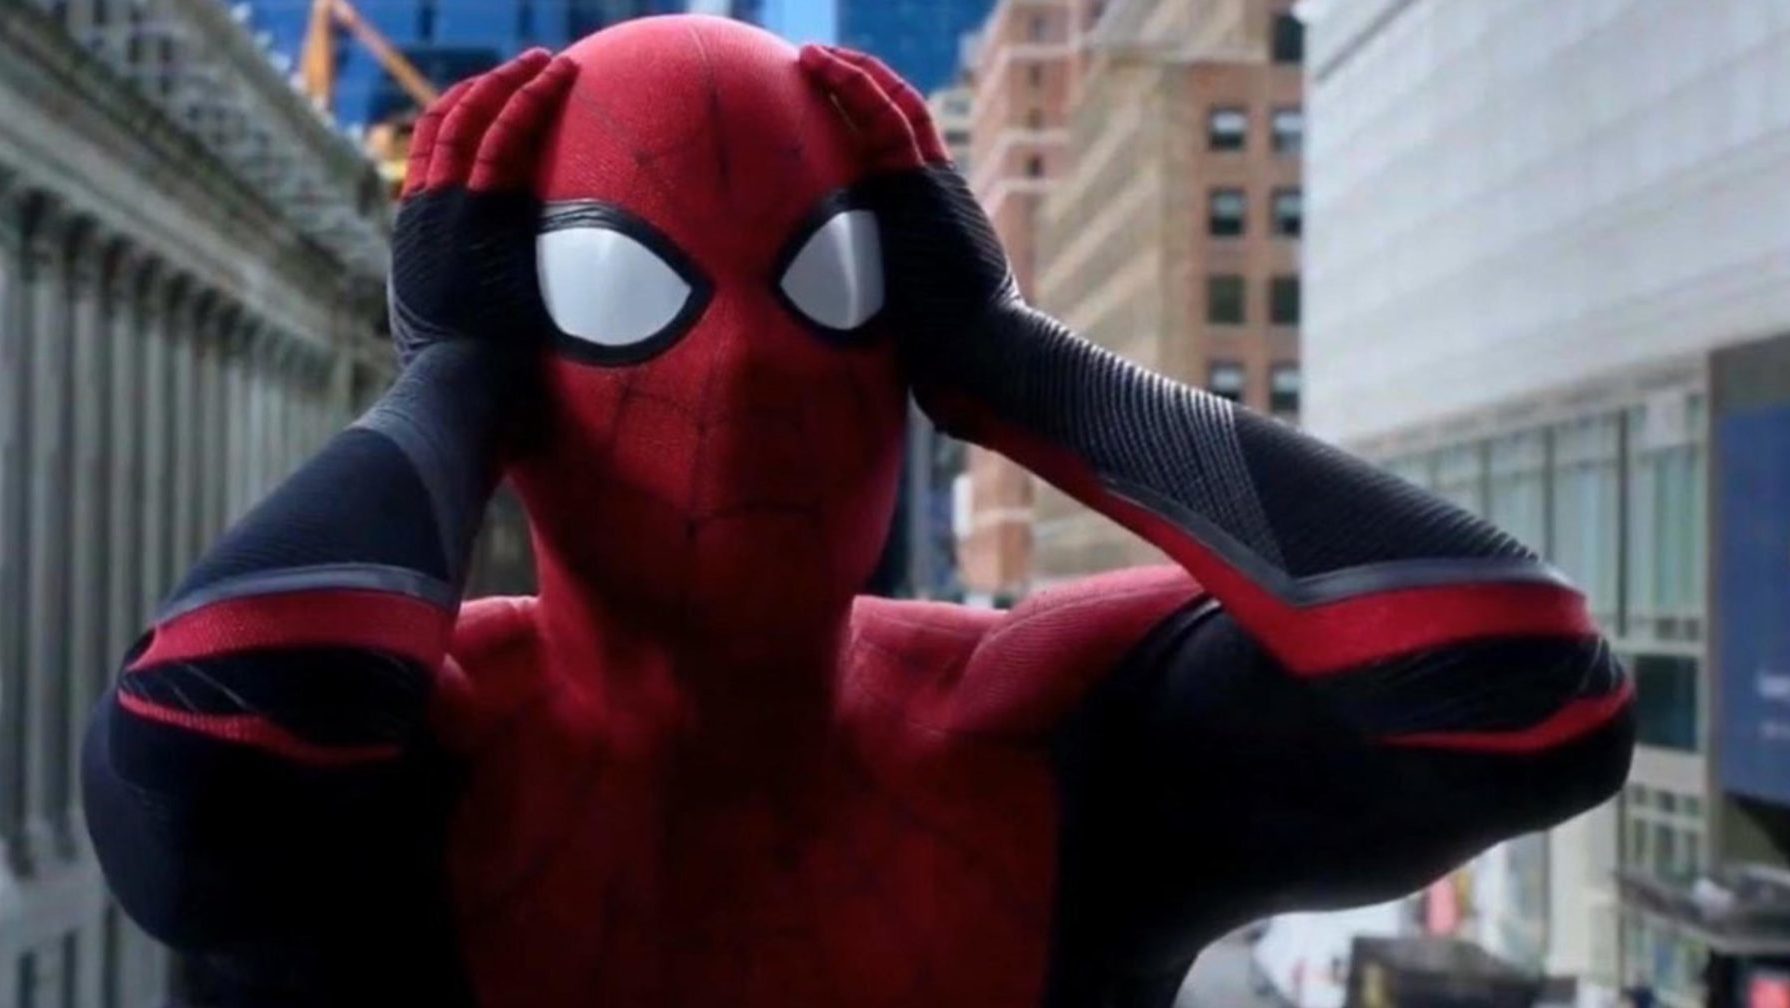 Vilão da Marvel dará a maior surra da história no Homem-Aranha